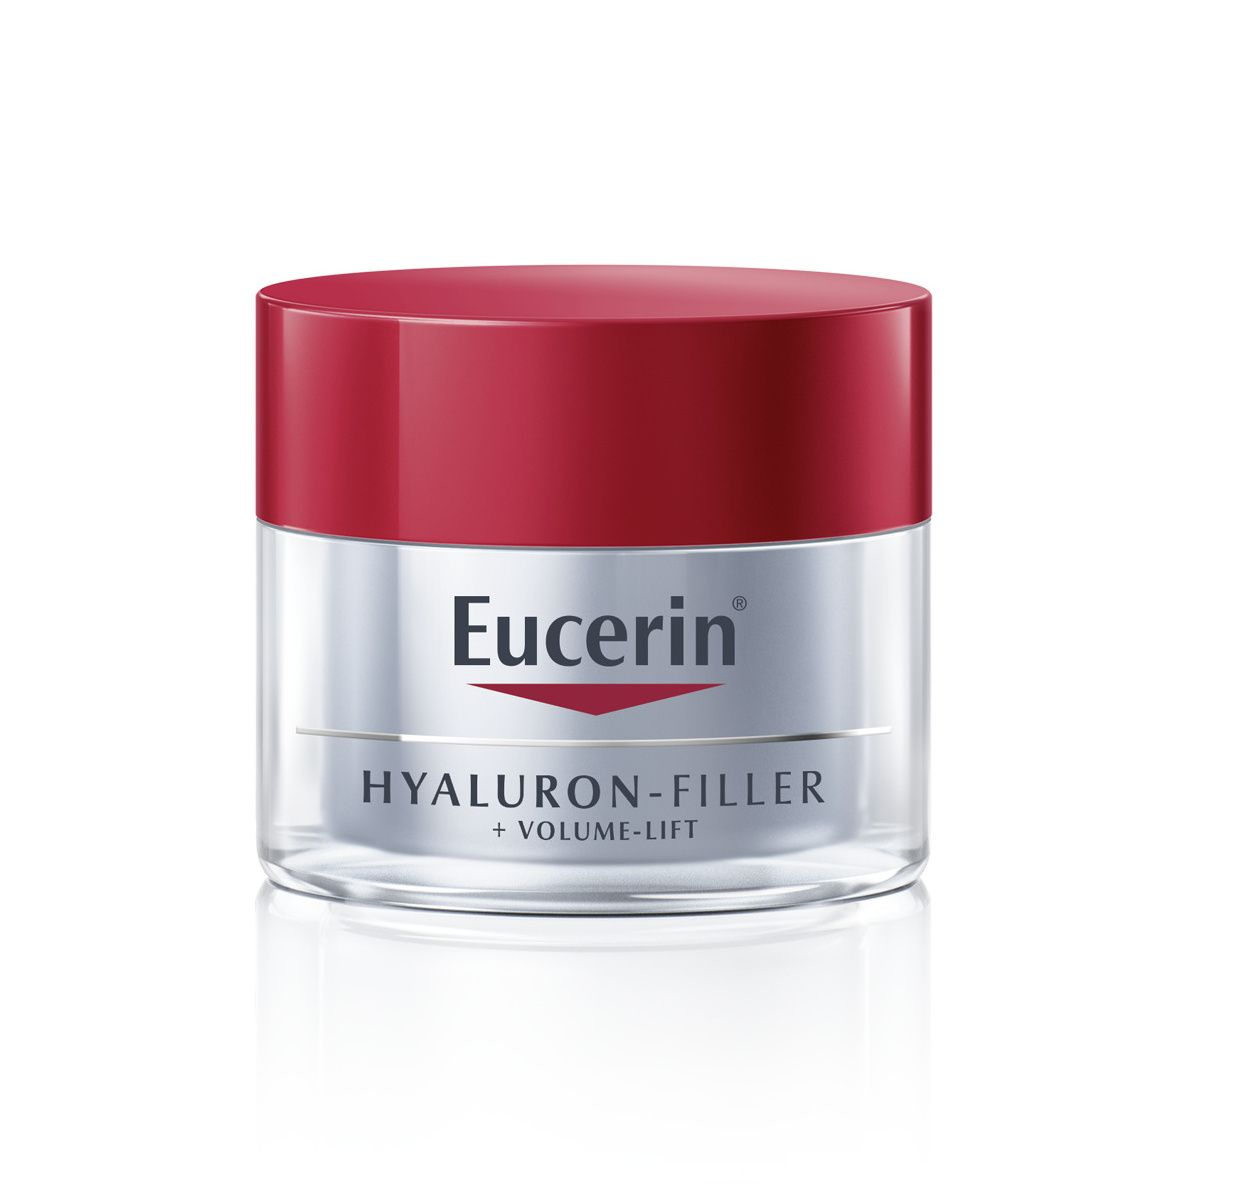 Eucerin Hyaluron-Filler + Volume-Lift noční krém 50 ml Eucerin